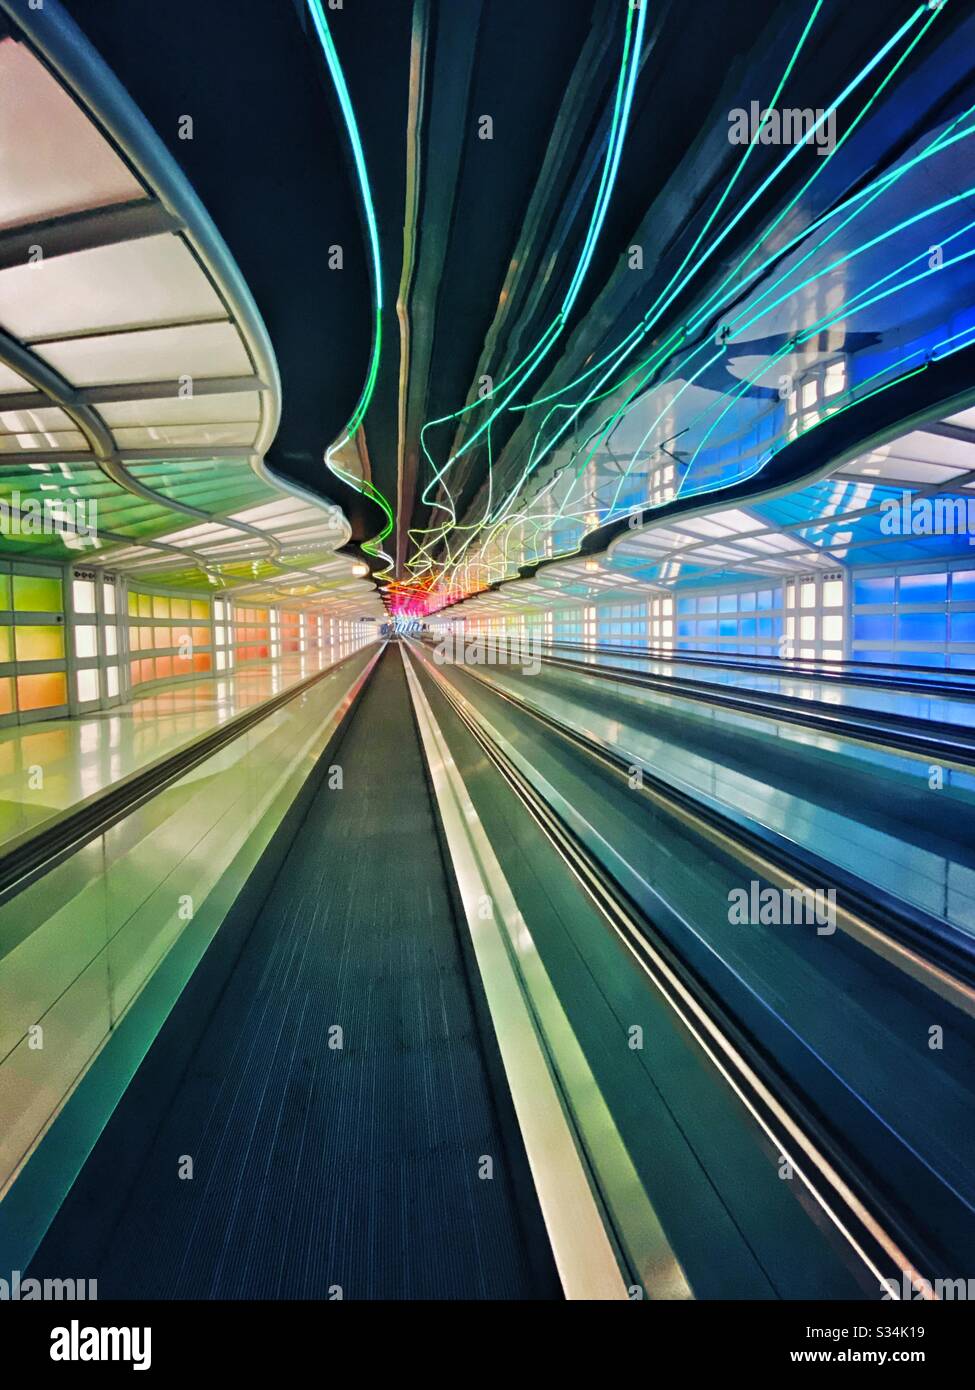 Aeroporto Internazionale o’Hare. Tunnel tra i concorsi B e C del terminale Unito con luci al neon colorate in movimento e passaggio pedonale in movimento. Foto Stock